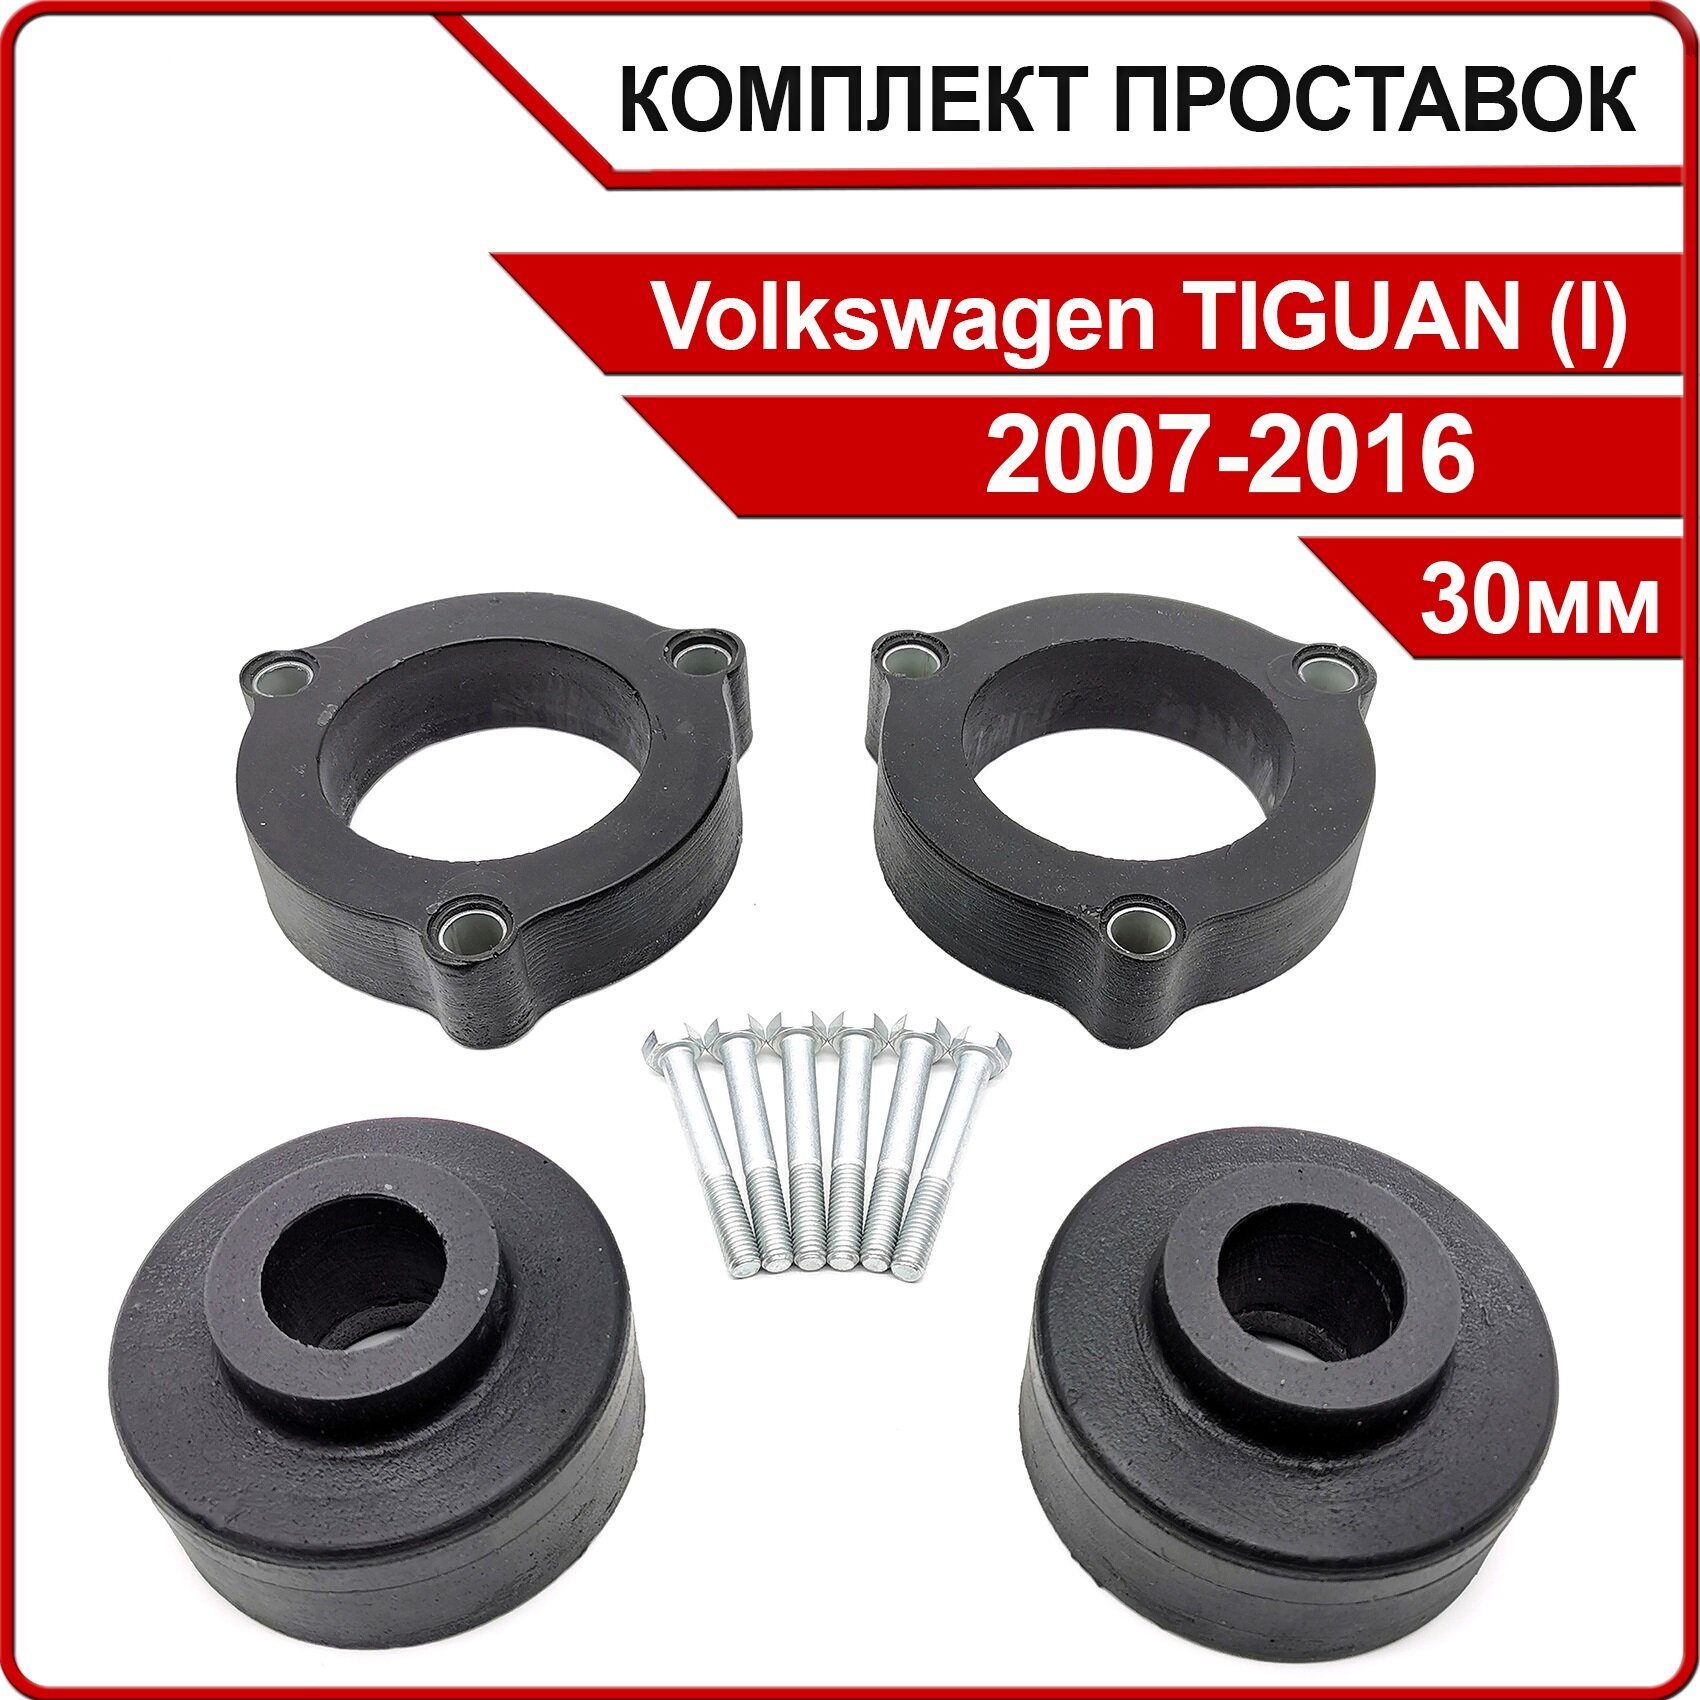 Комплект проставок 30мм для Volkswagen TIGUAN, (I), 5N1/5N2, 2007-2016, полиуретан, 4шт / Автопроставка